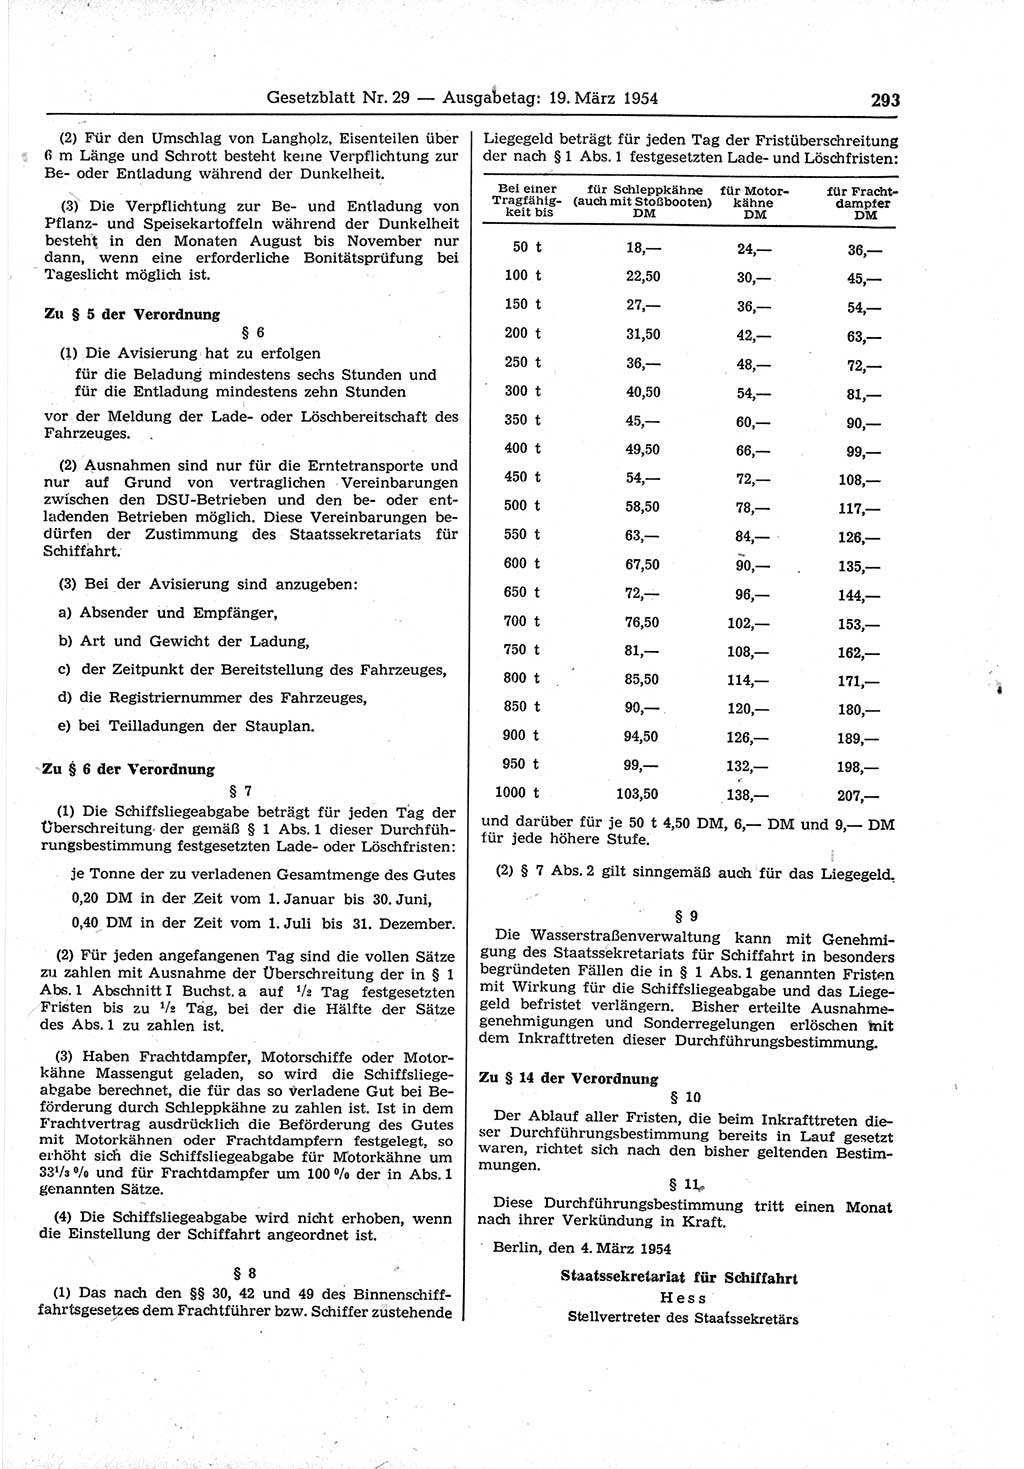 Gesetzblatt (GBl.) der Deutschen Demokratischen Republik (DDR) 1954, Seite 293 (GBl. DDR 1954, S. 293)